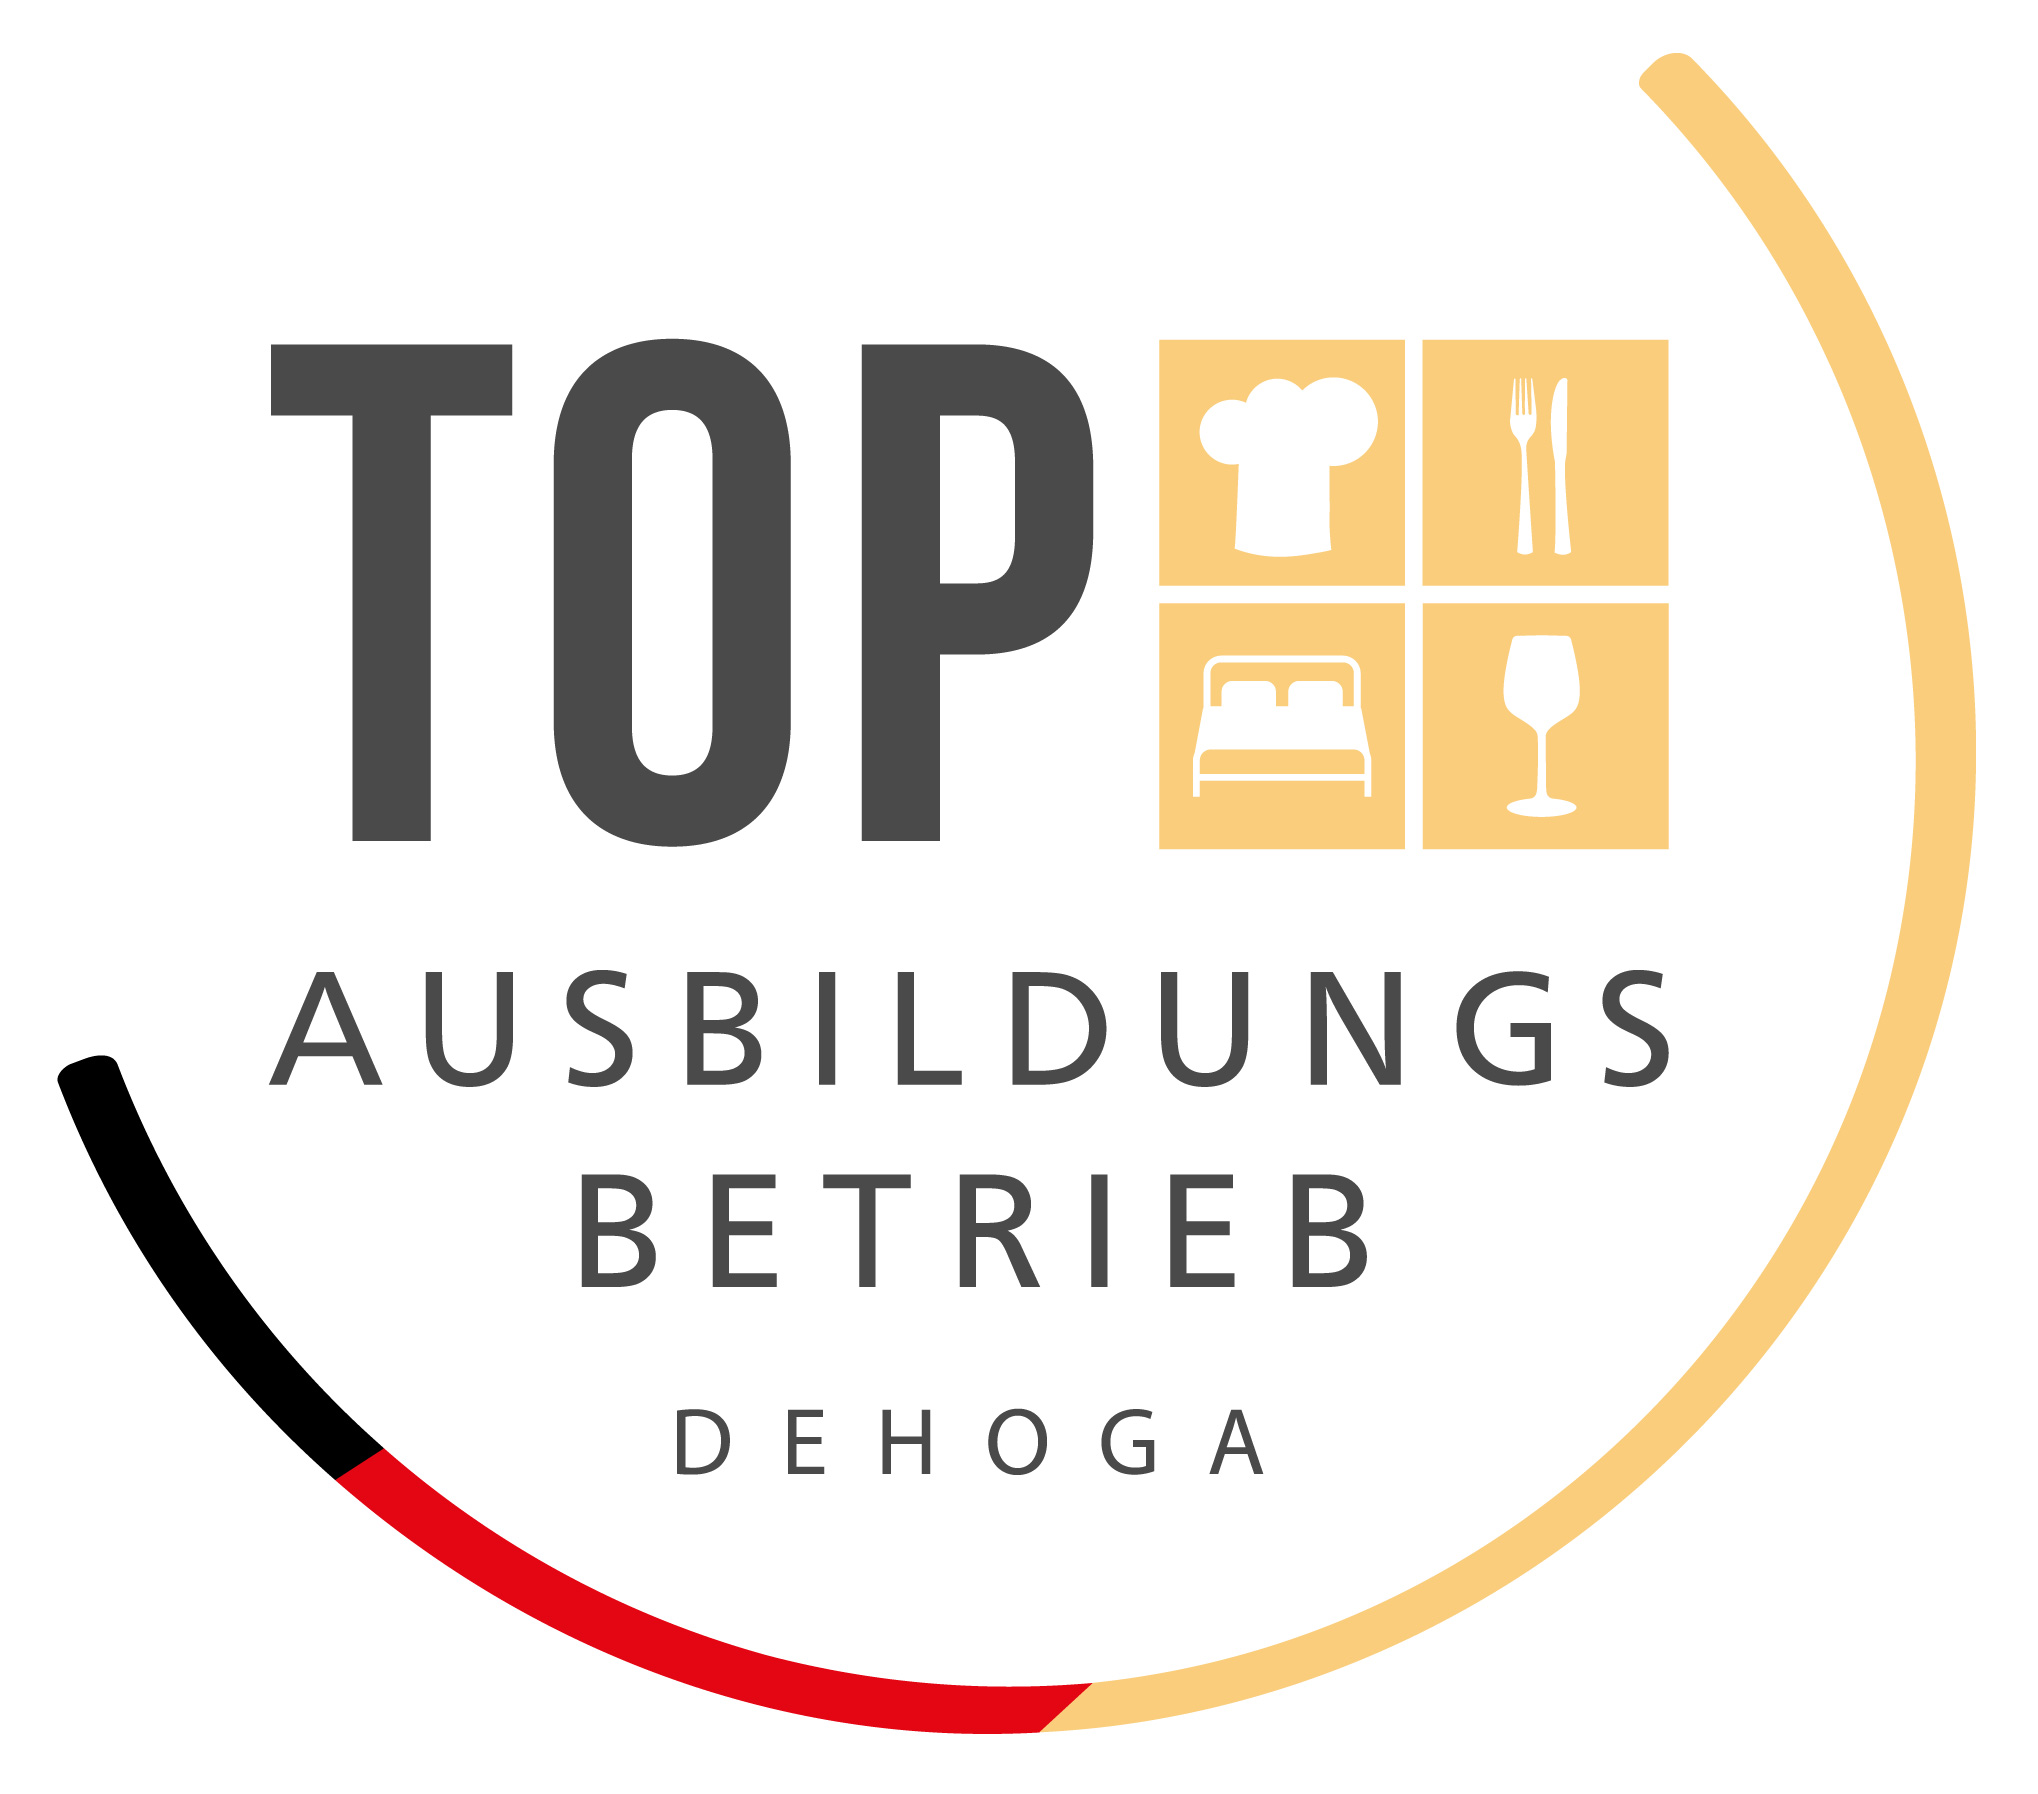 Logo_DEHOGA_Top_Ausbildungsbetrieb_1019_(32728)_WEB.JPG